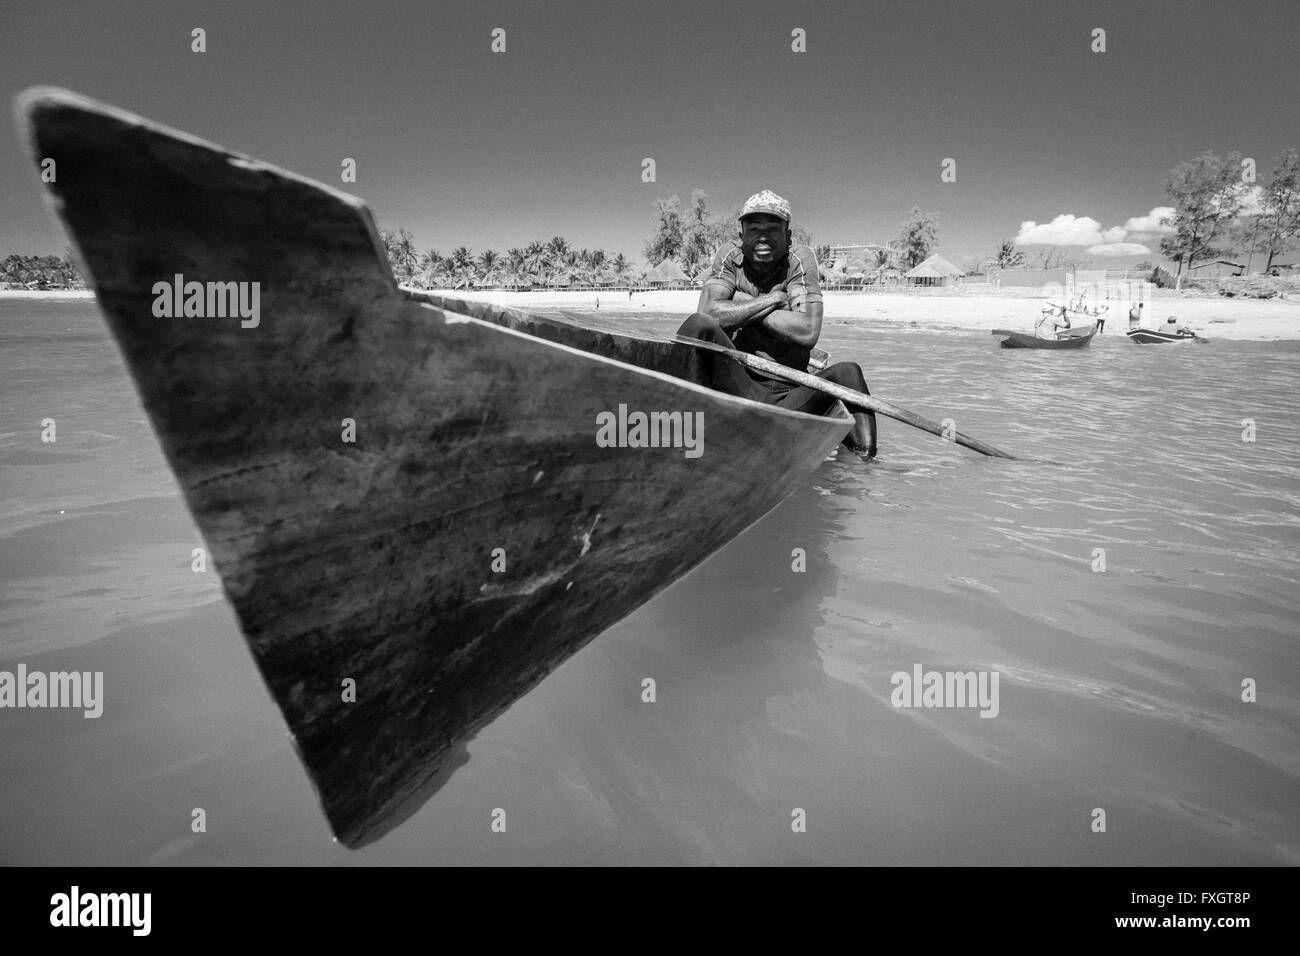 Le Mozambique, l'Afrique, un pêcheur dans le bateau dans la mer, plage de sable blanc, noir et blanc. Banque D'Images